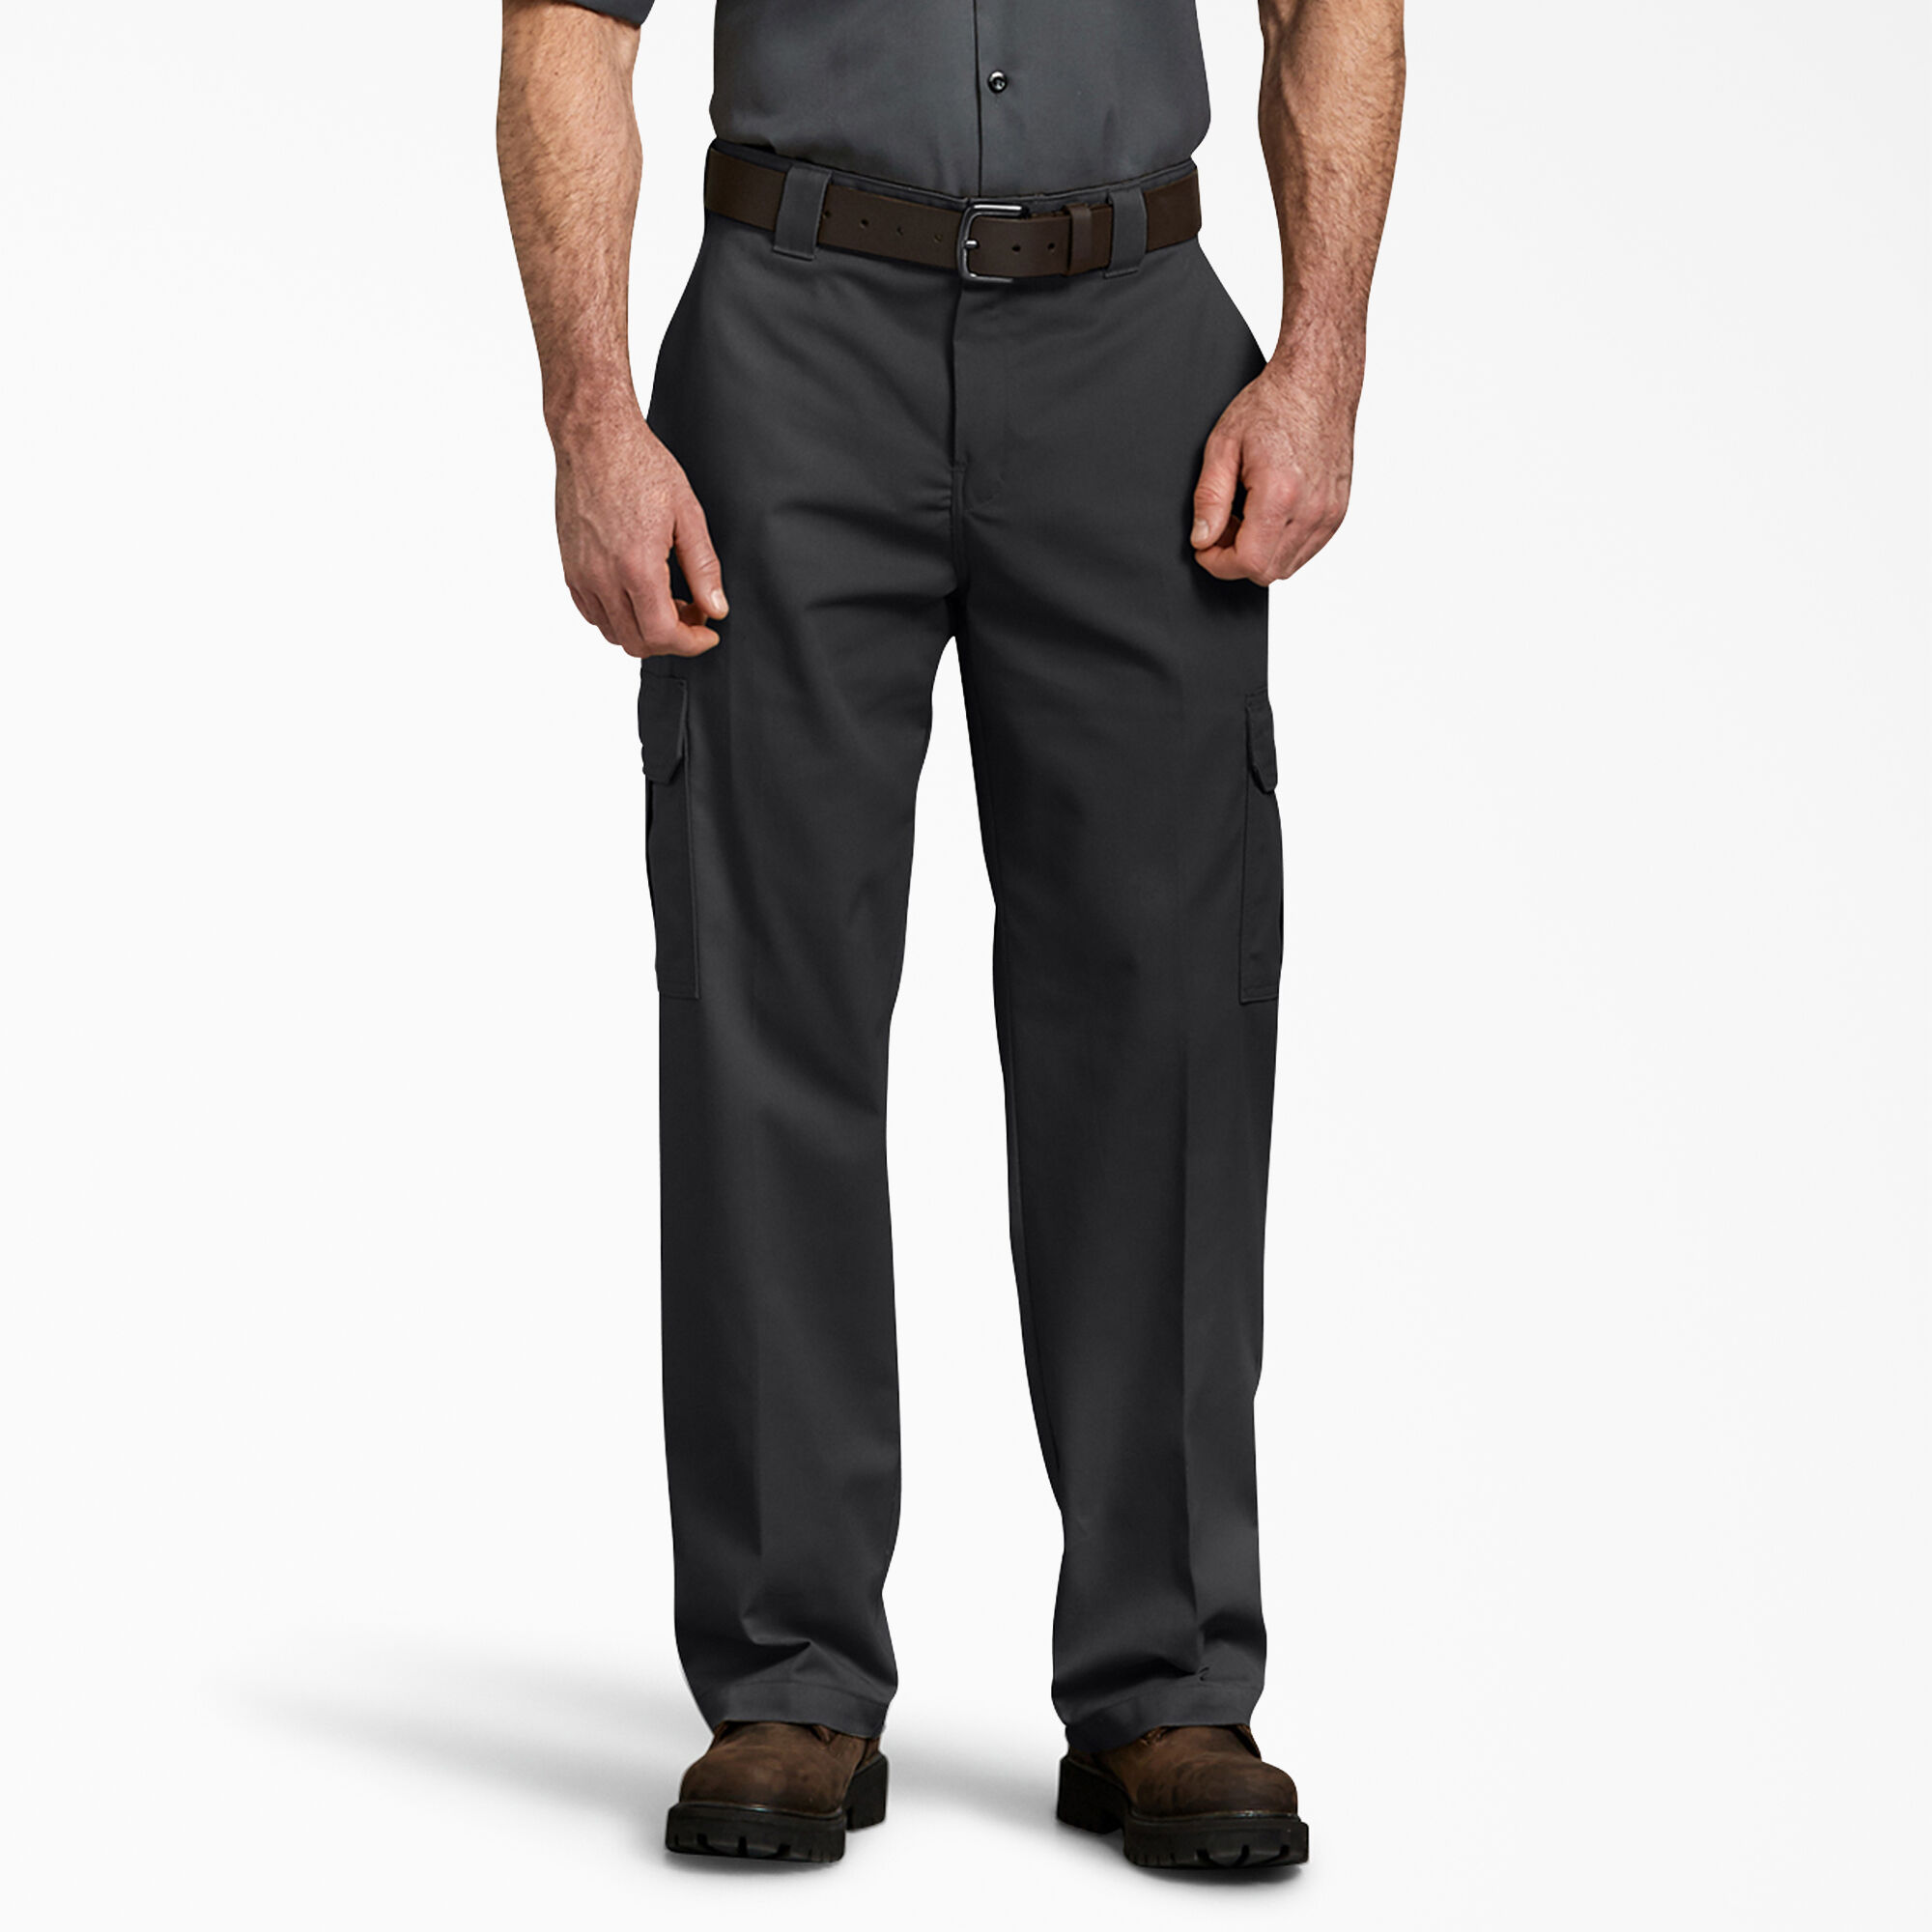 Reforzada Rango de Rodillas Color Negro Dickies Cargo Pantalones/Pantalones de Trabajo wd884 